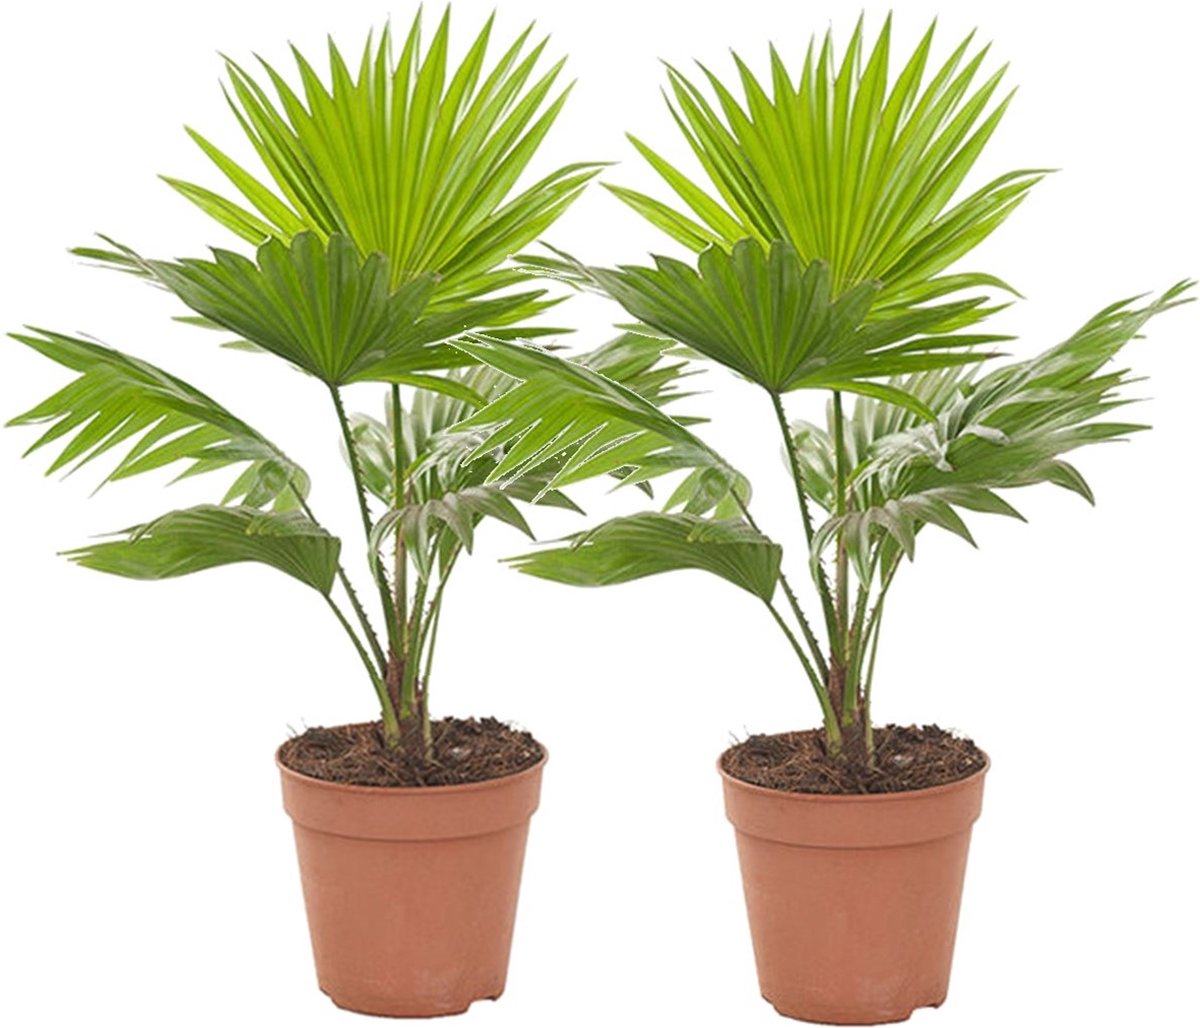 Palmier d'intérieur - Livistona rotundifola - plante d'intérieur